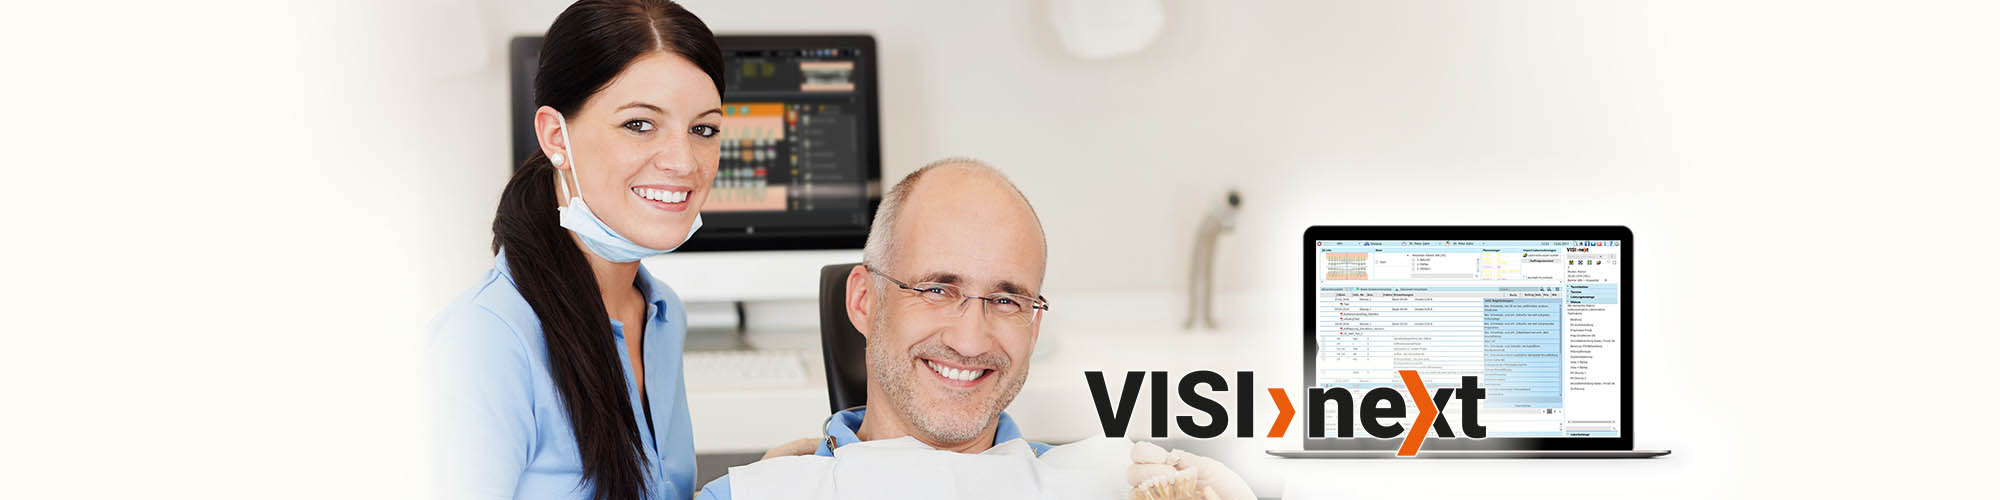 VISInext für Zahnmedizinische Fachangestellte - Behandeln - BDV Branchen-Daten-Verarbeitung GmbH